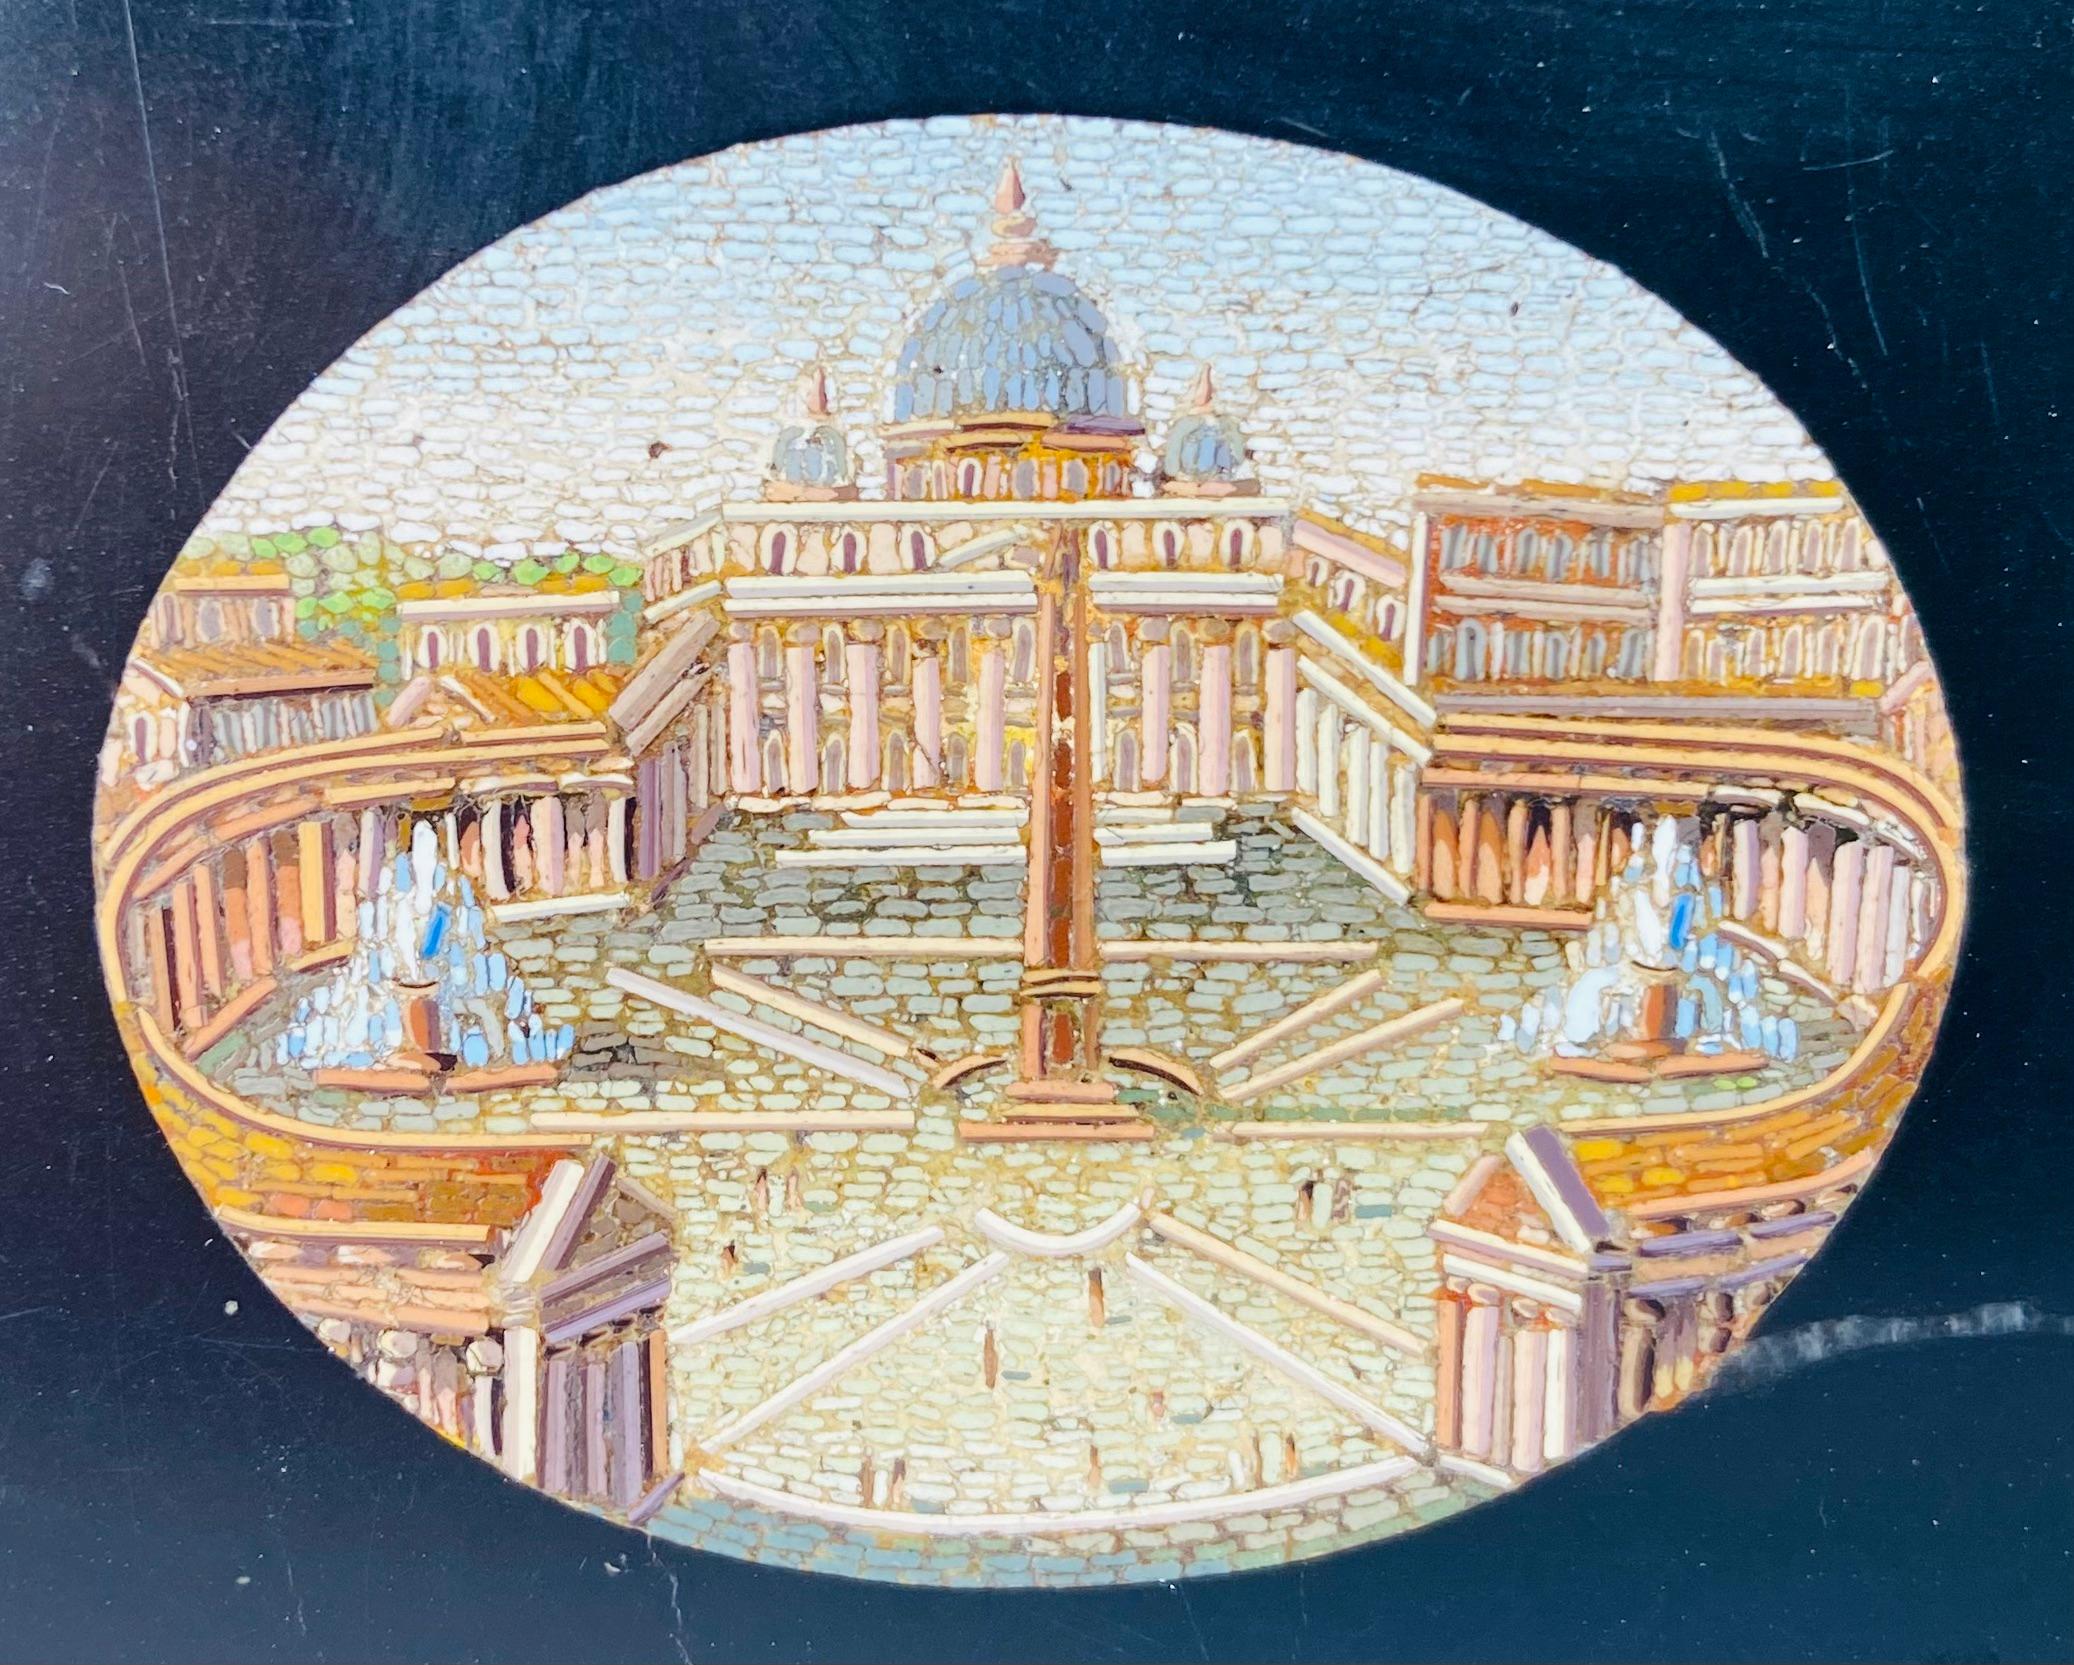 Tablette ou presse-papier en micro-mosaïque du milieu du 19e siècle représentant le Vatican, le Colisée de Rome, le Panthéon, les ruines du Forum romain et le temple de Vesta, le tout serti dans du marbre noir.
Au cours du Grand Tour d'un gentleman,